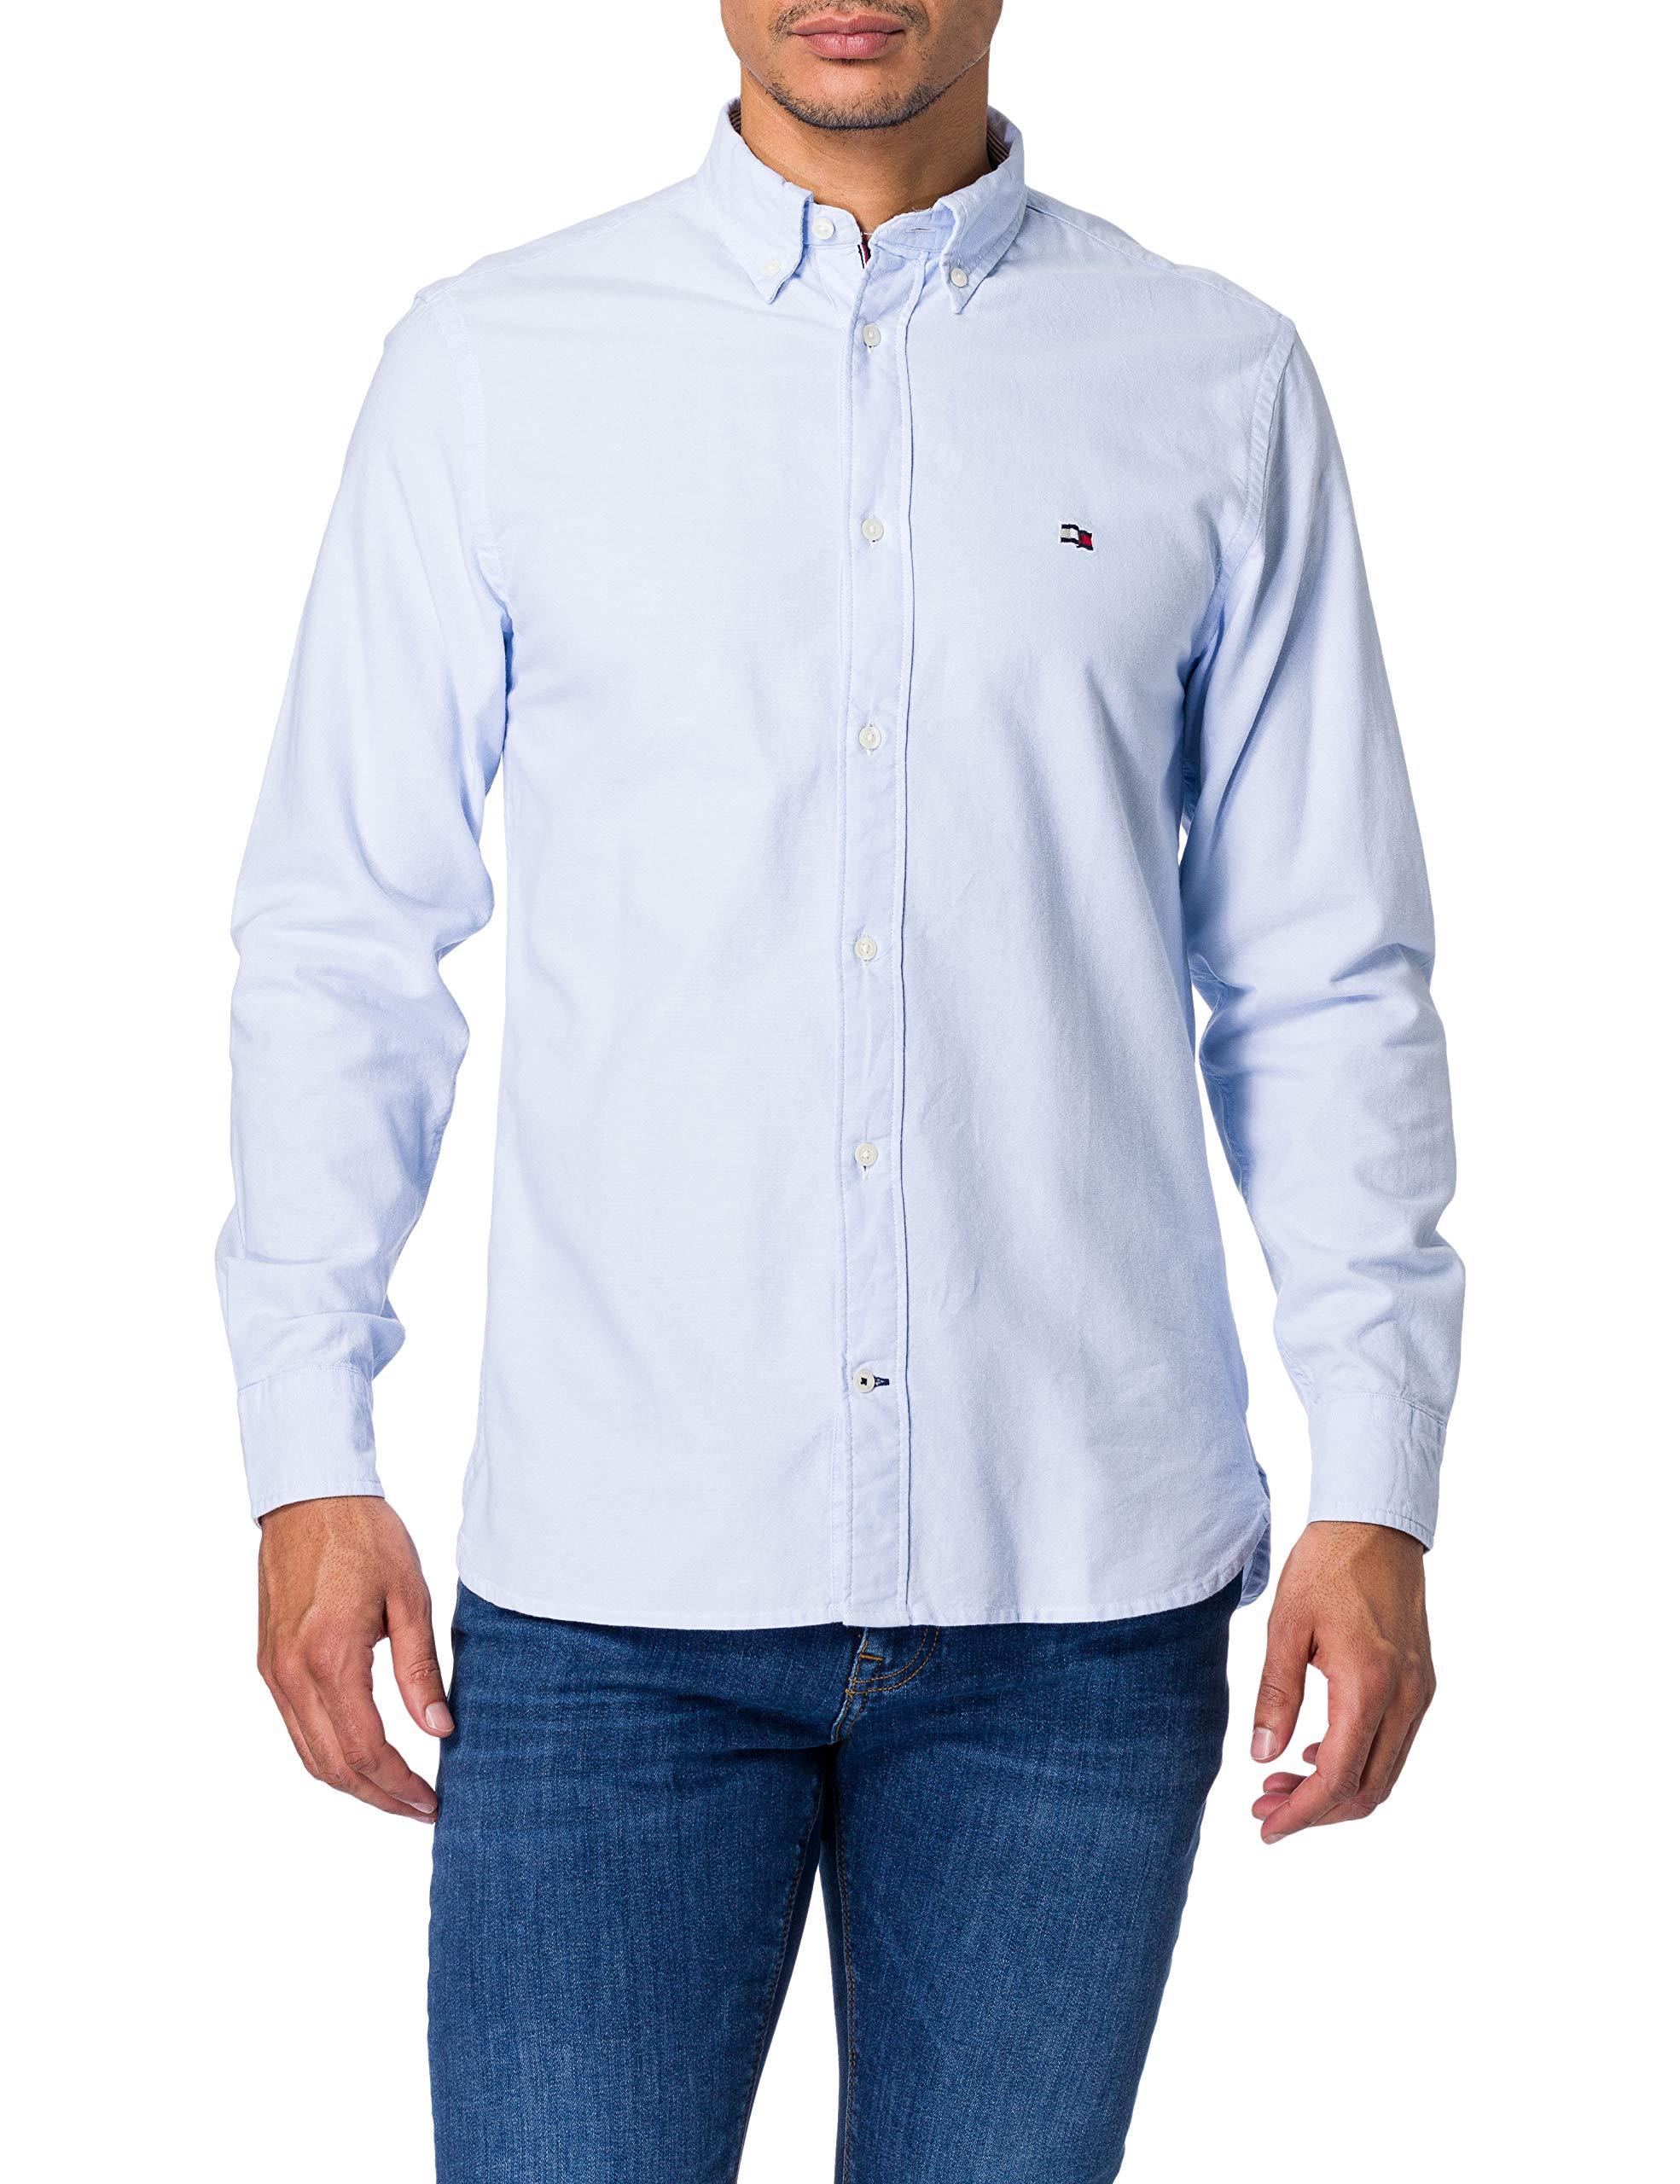 Tommy Hilfiger Classic Oxford Shirt Hemd in Blau für Herren - Sparen Sie 7%  - Lyst